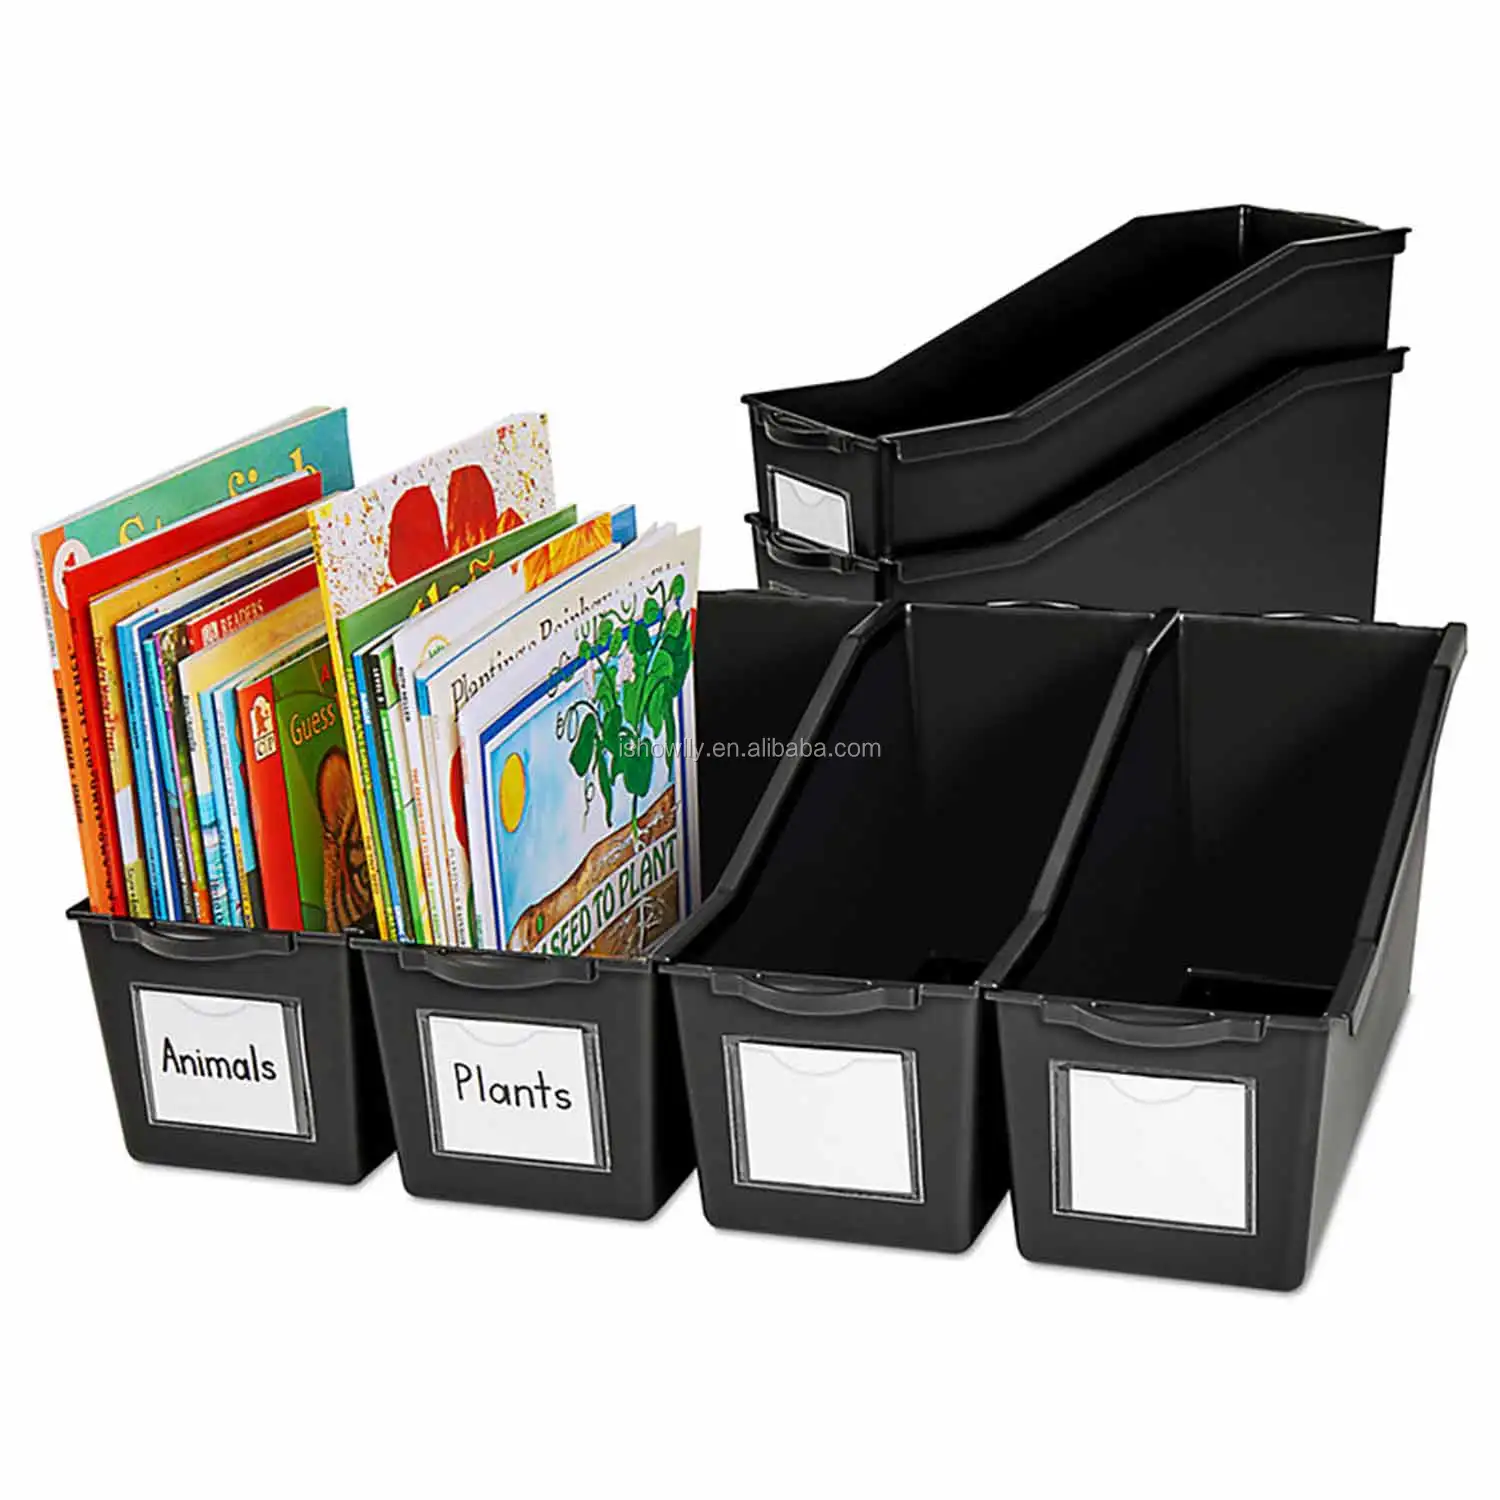 black book bins